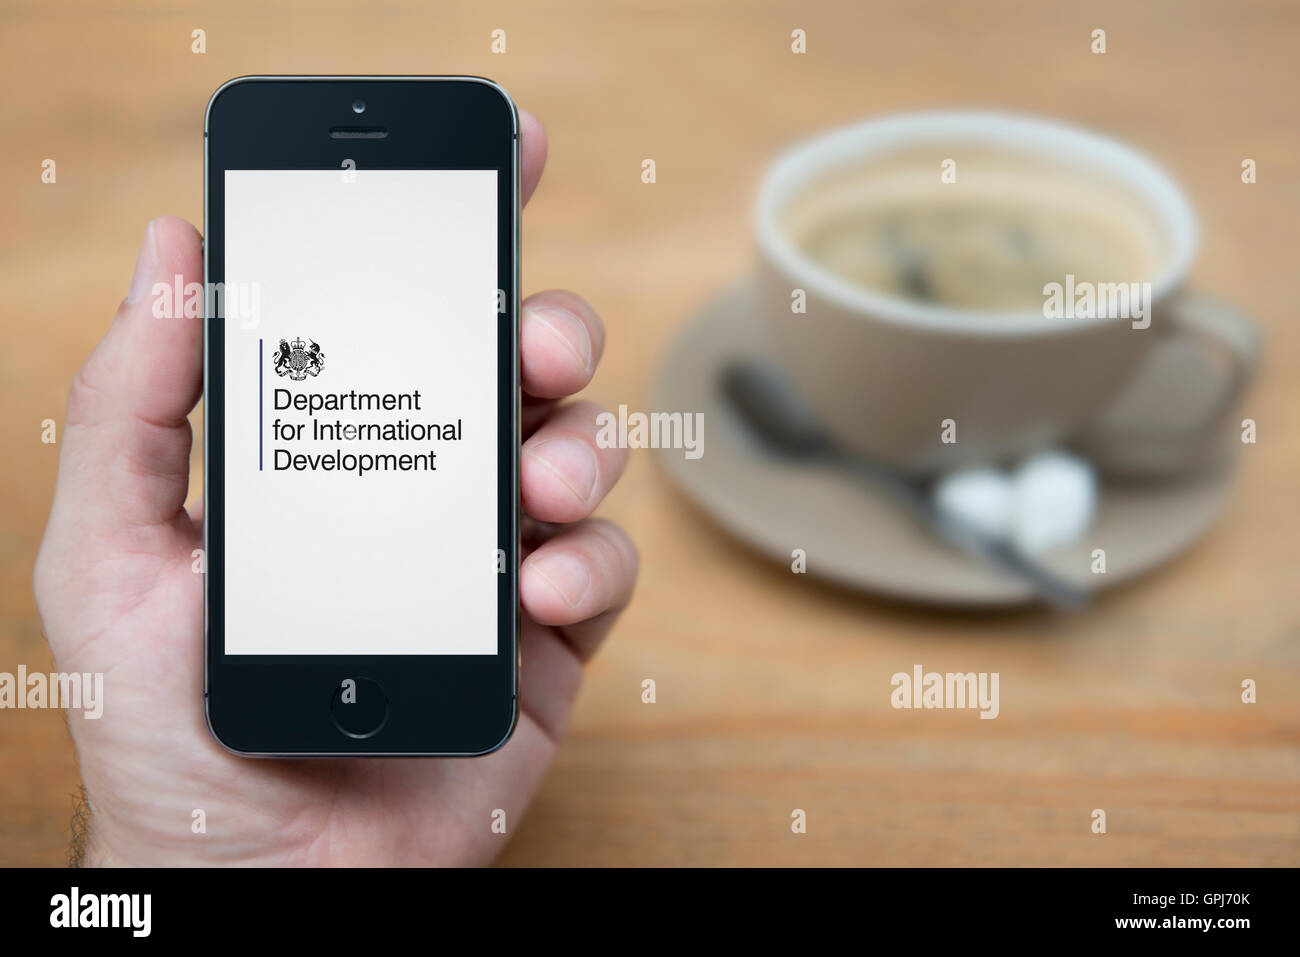 Un homme se penche sur son iPhone qui affiche le Ministère britannique pour le développement international (logo usage éditorial uniquement). Banque D'Images